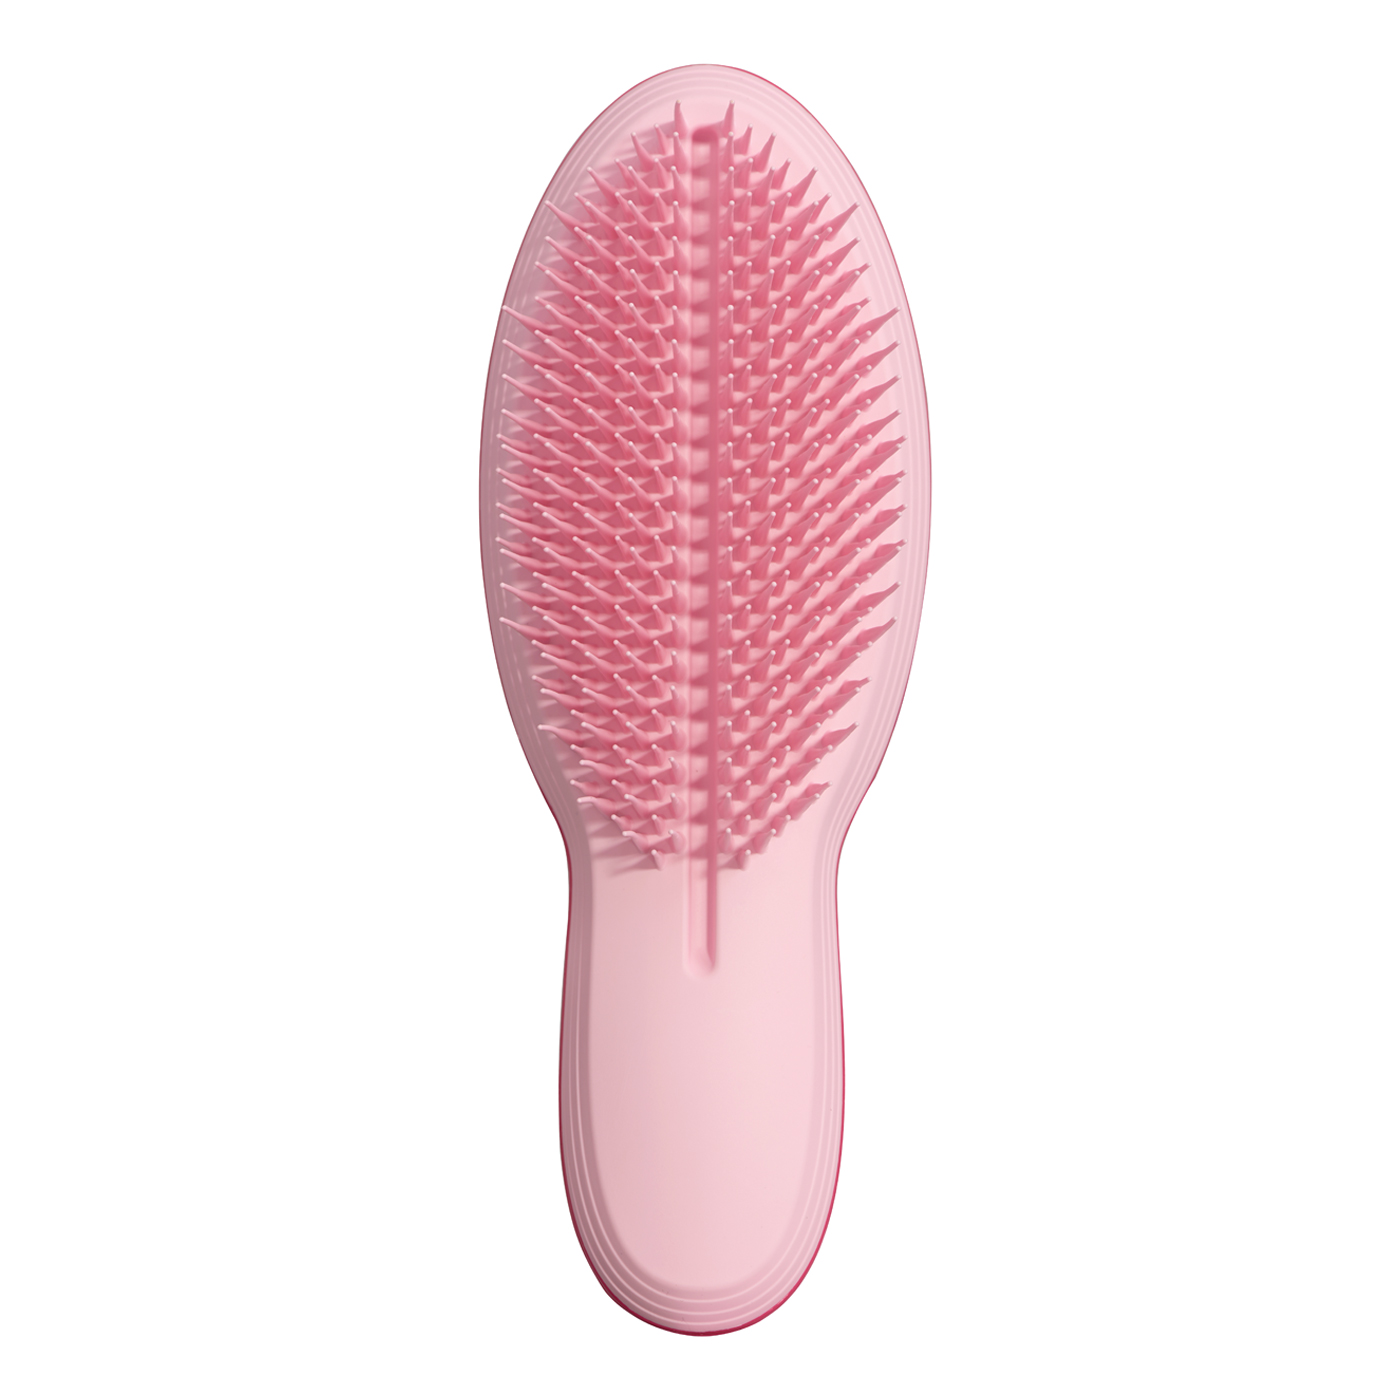  Tangle Teezer The Ultimate Saç Fırçası  | Pink